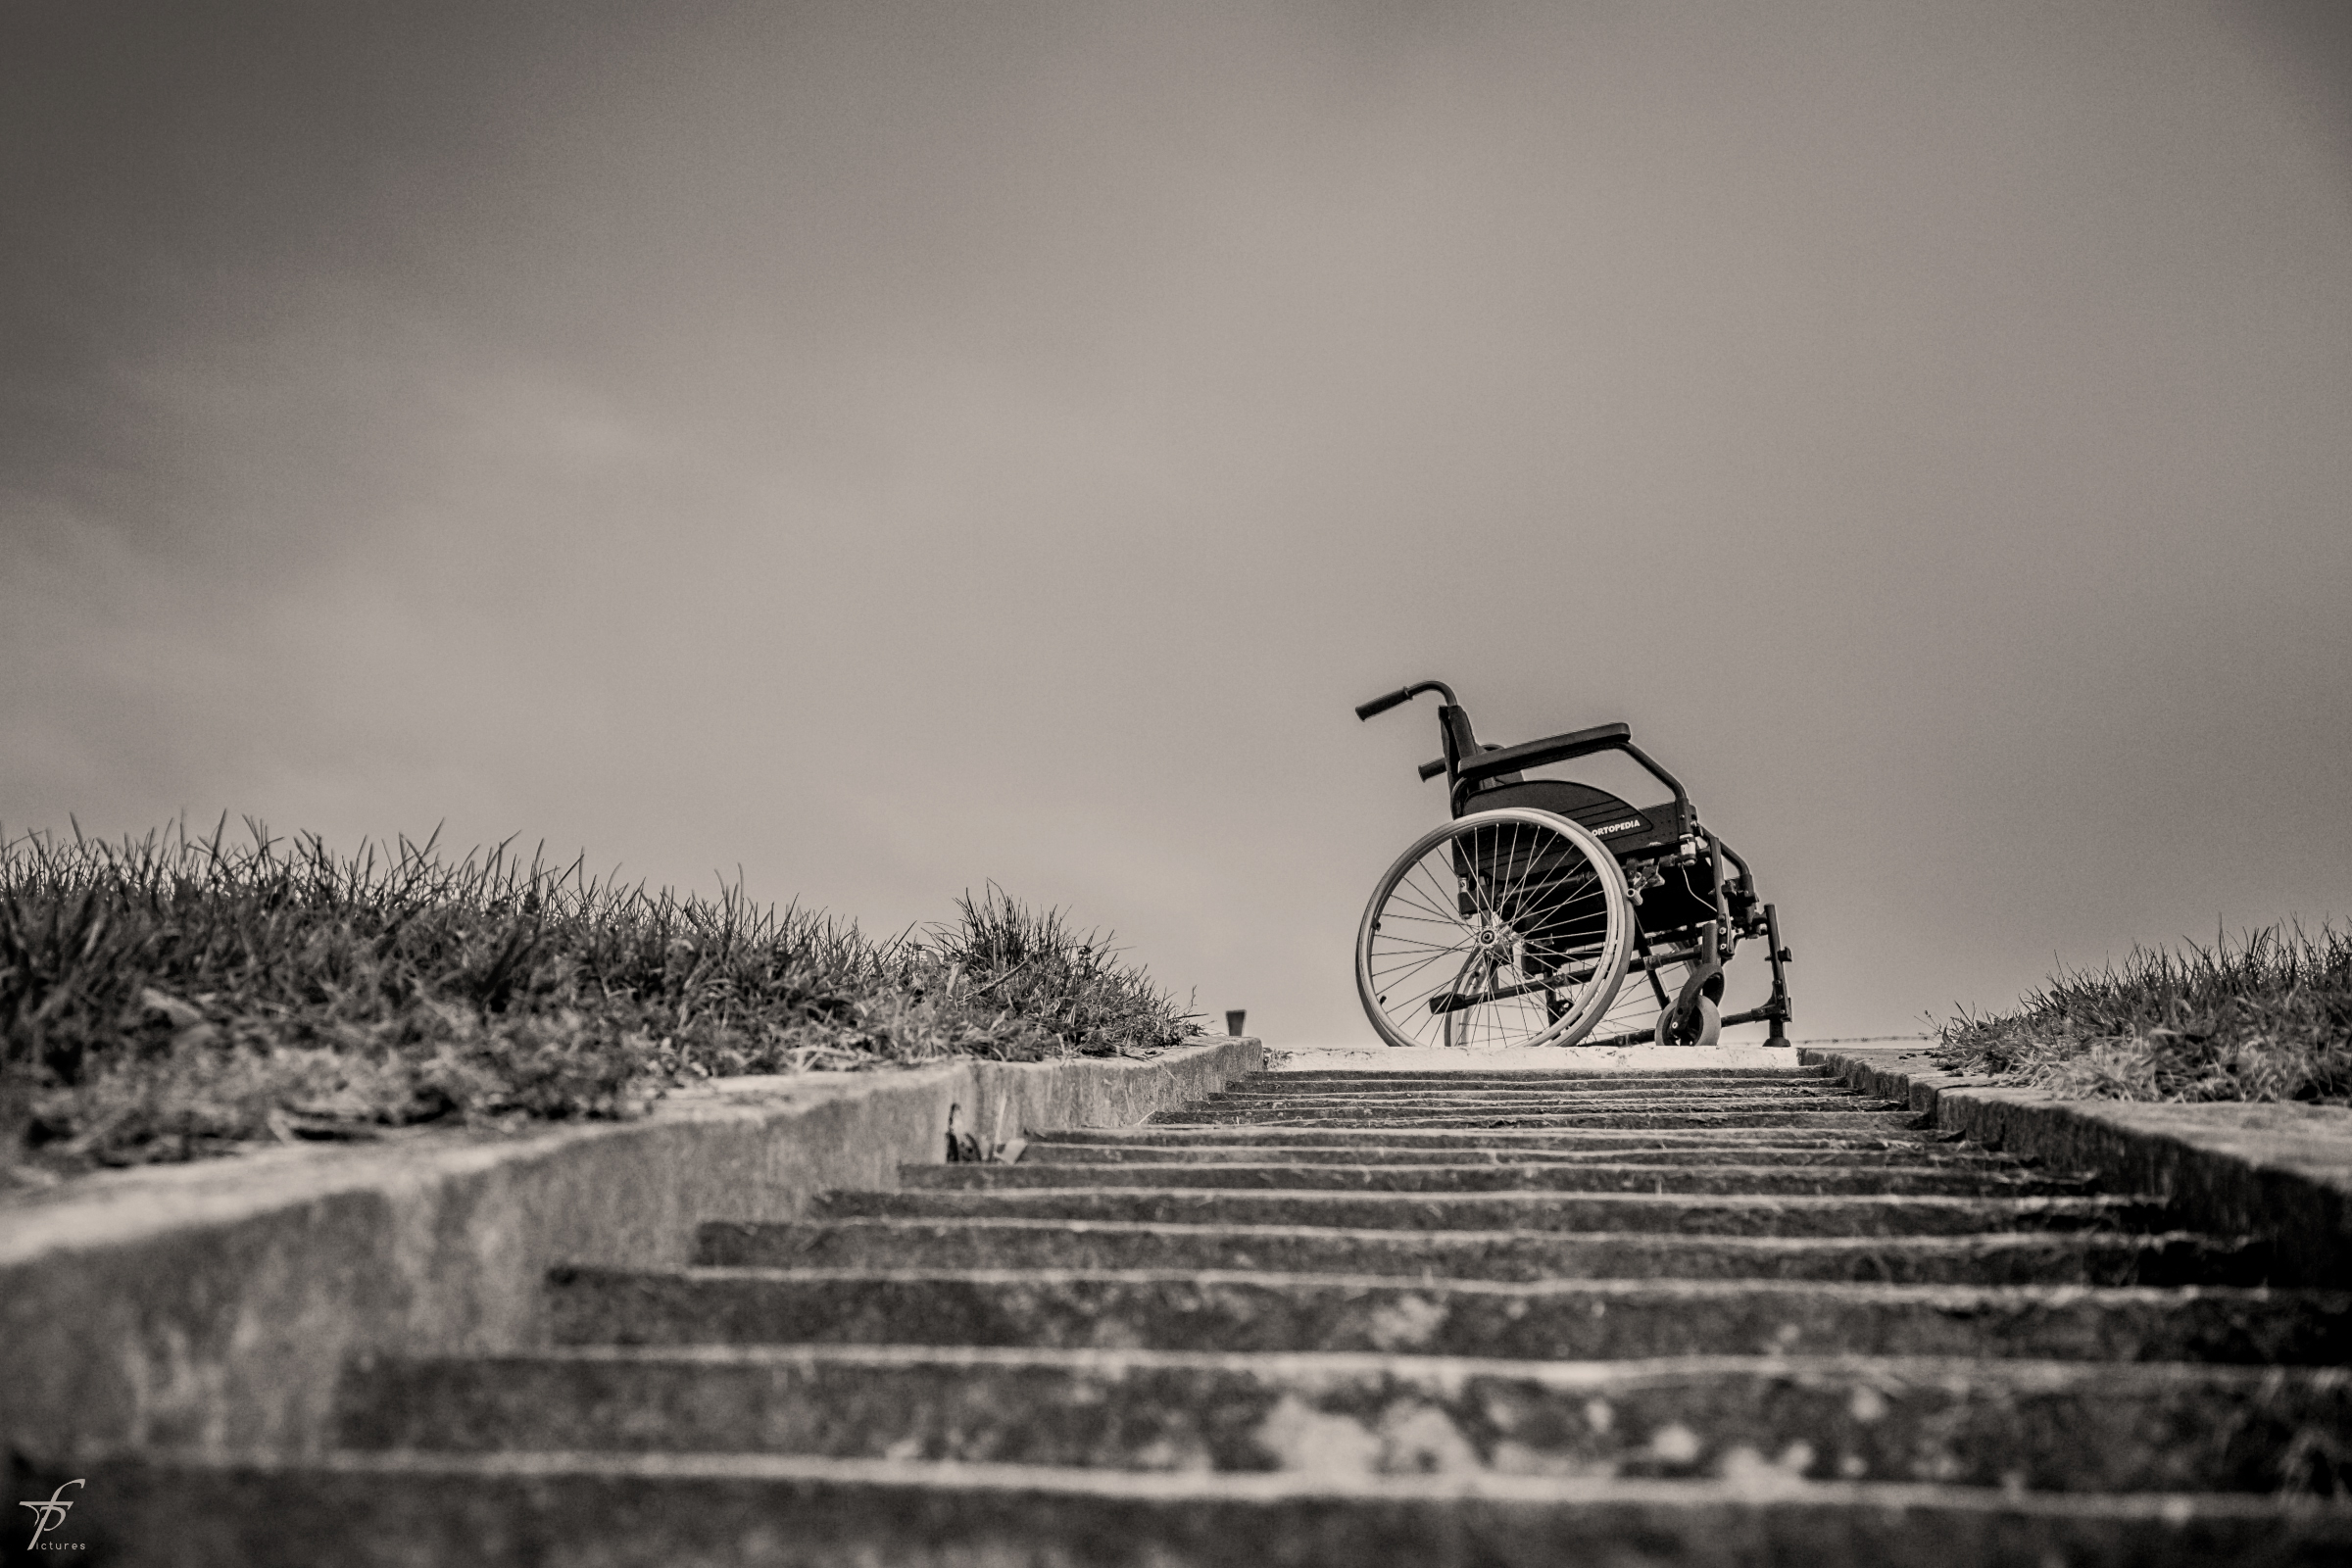 Wheelchair photo